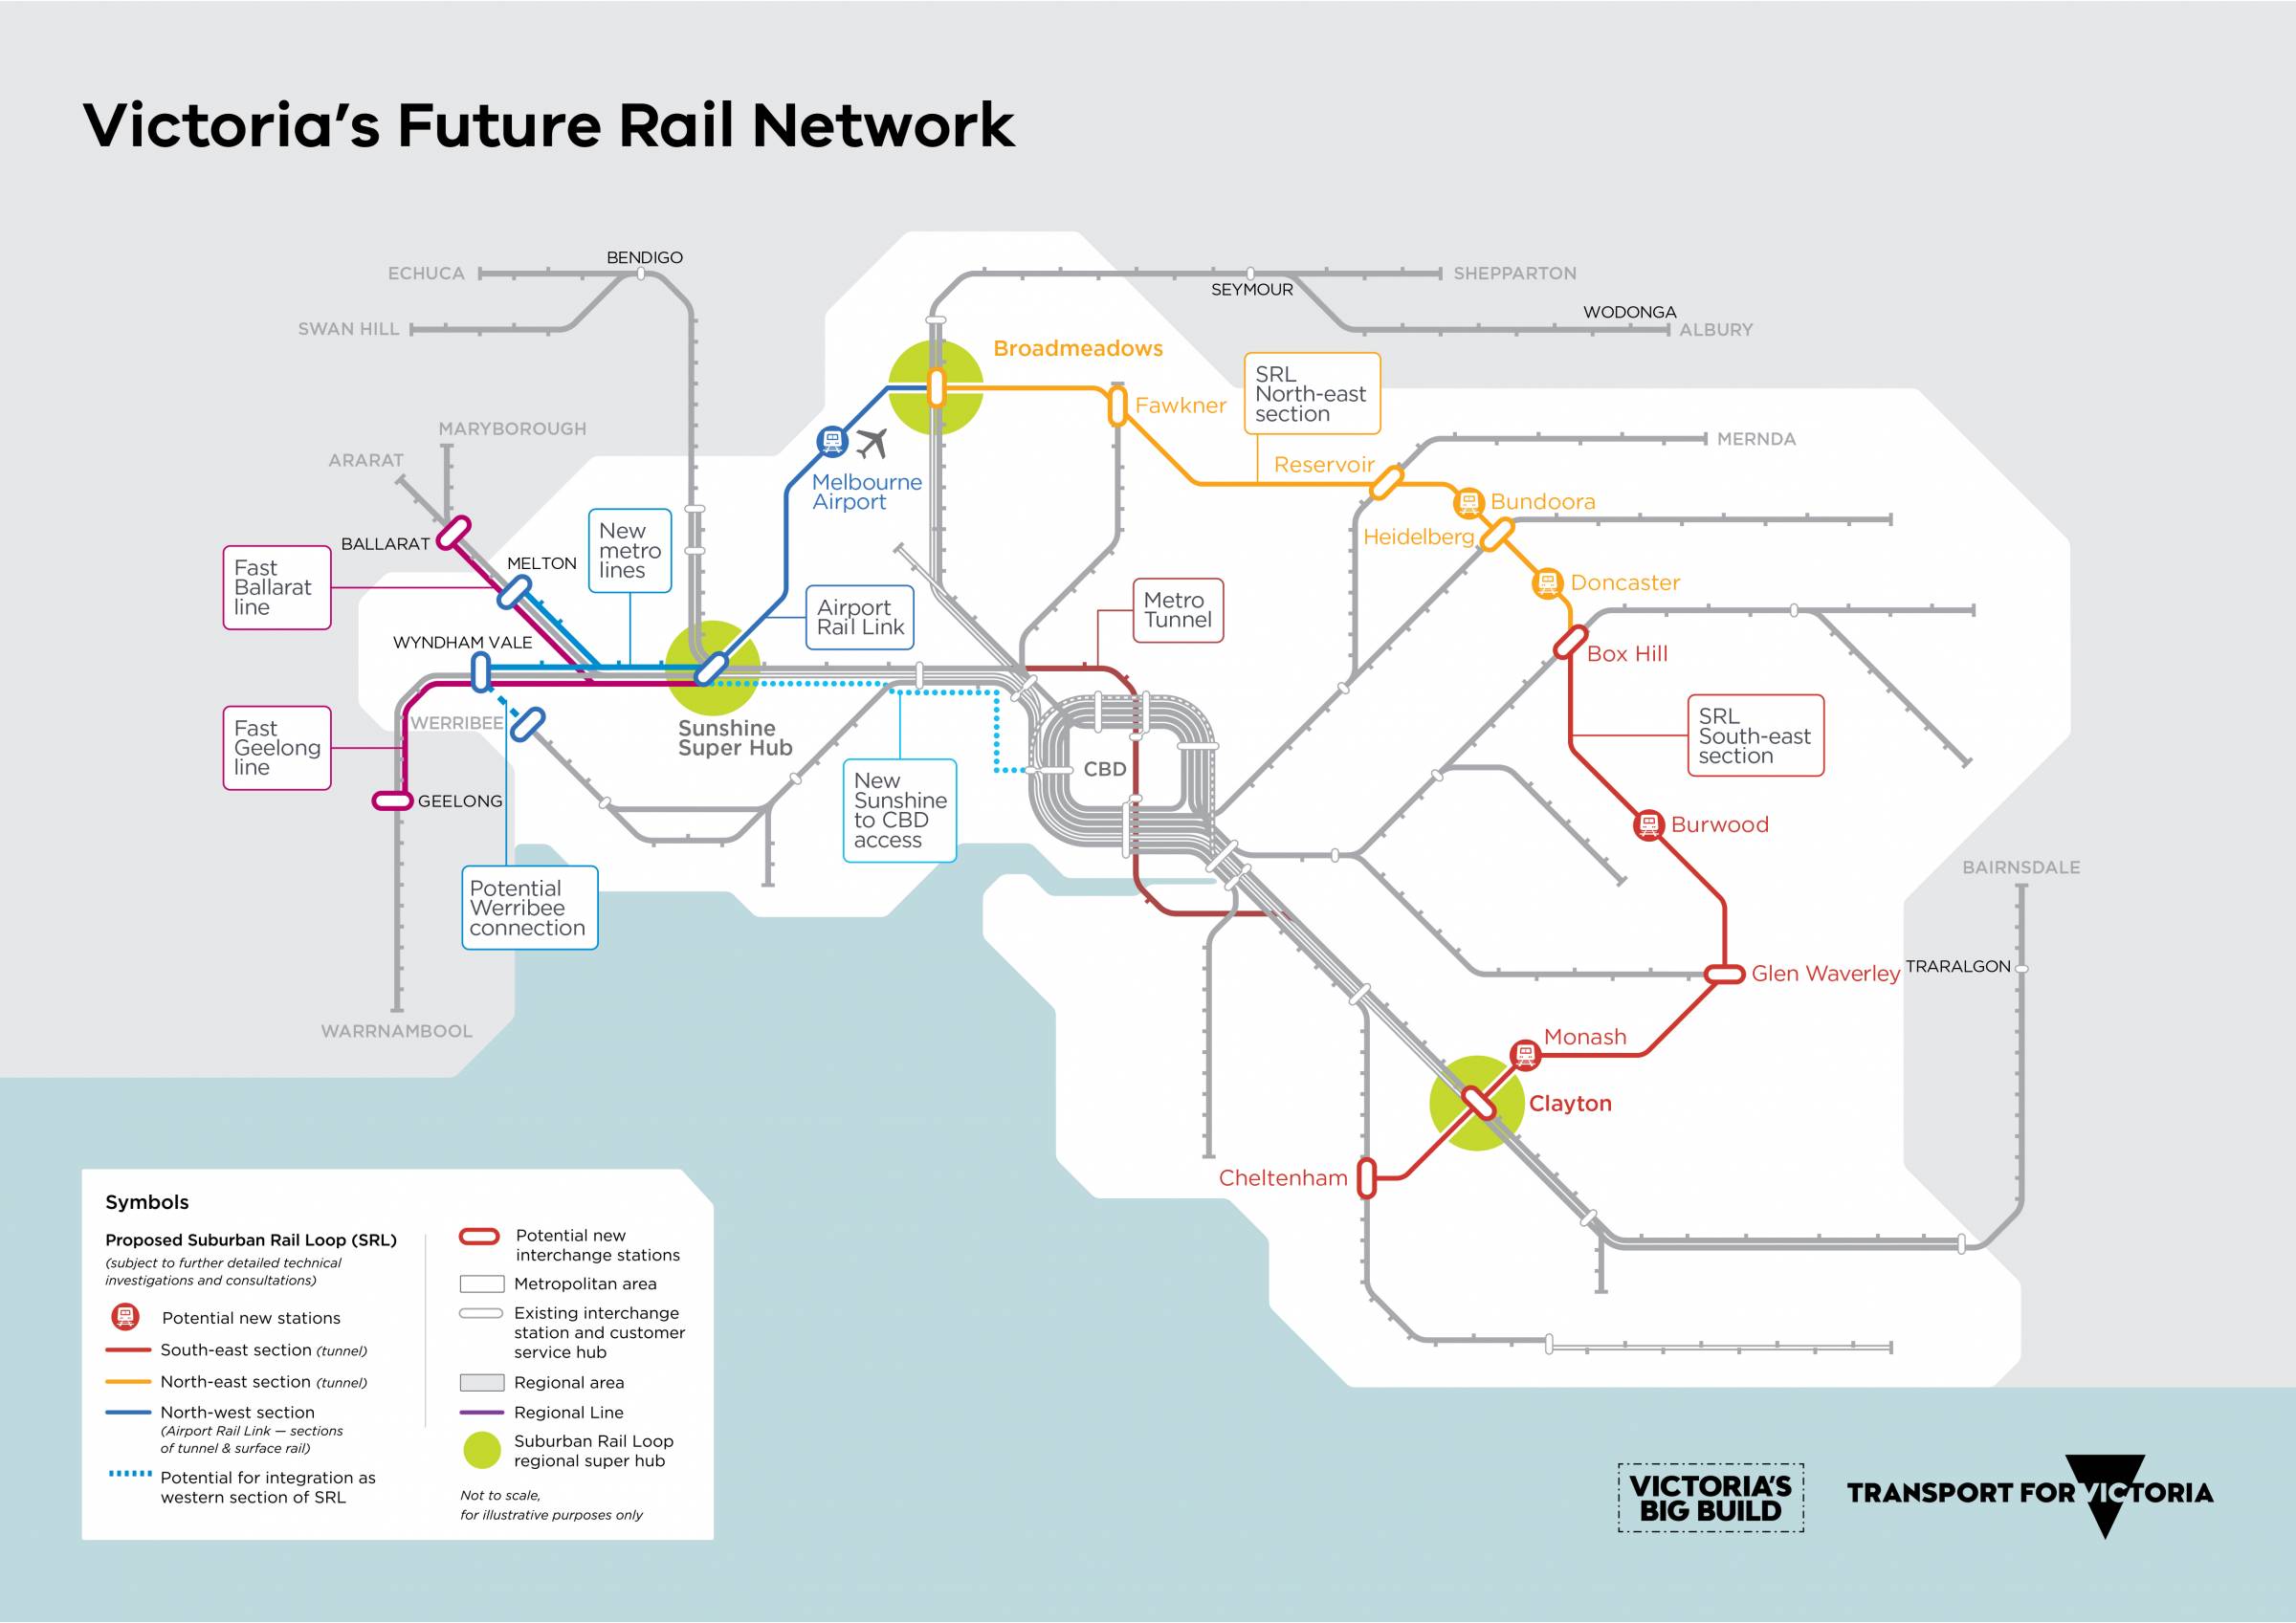 VRIP - Victorian Rail Infrastructure Program